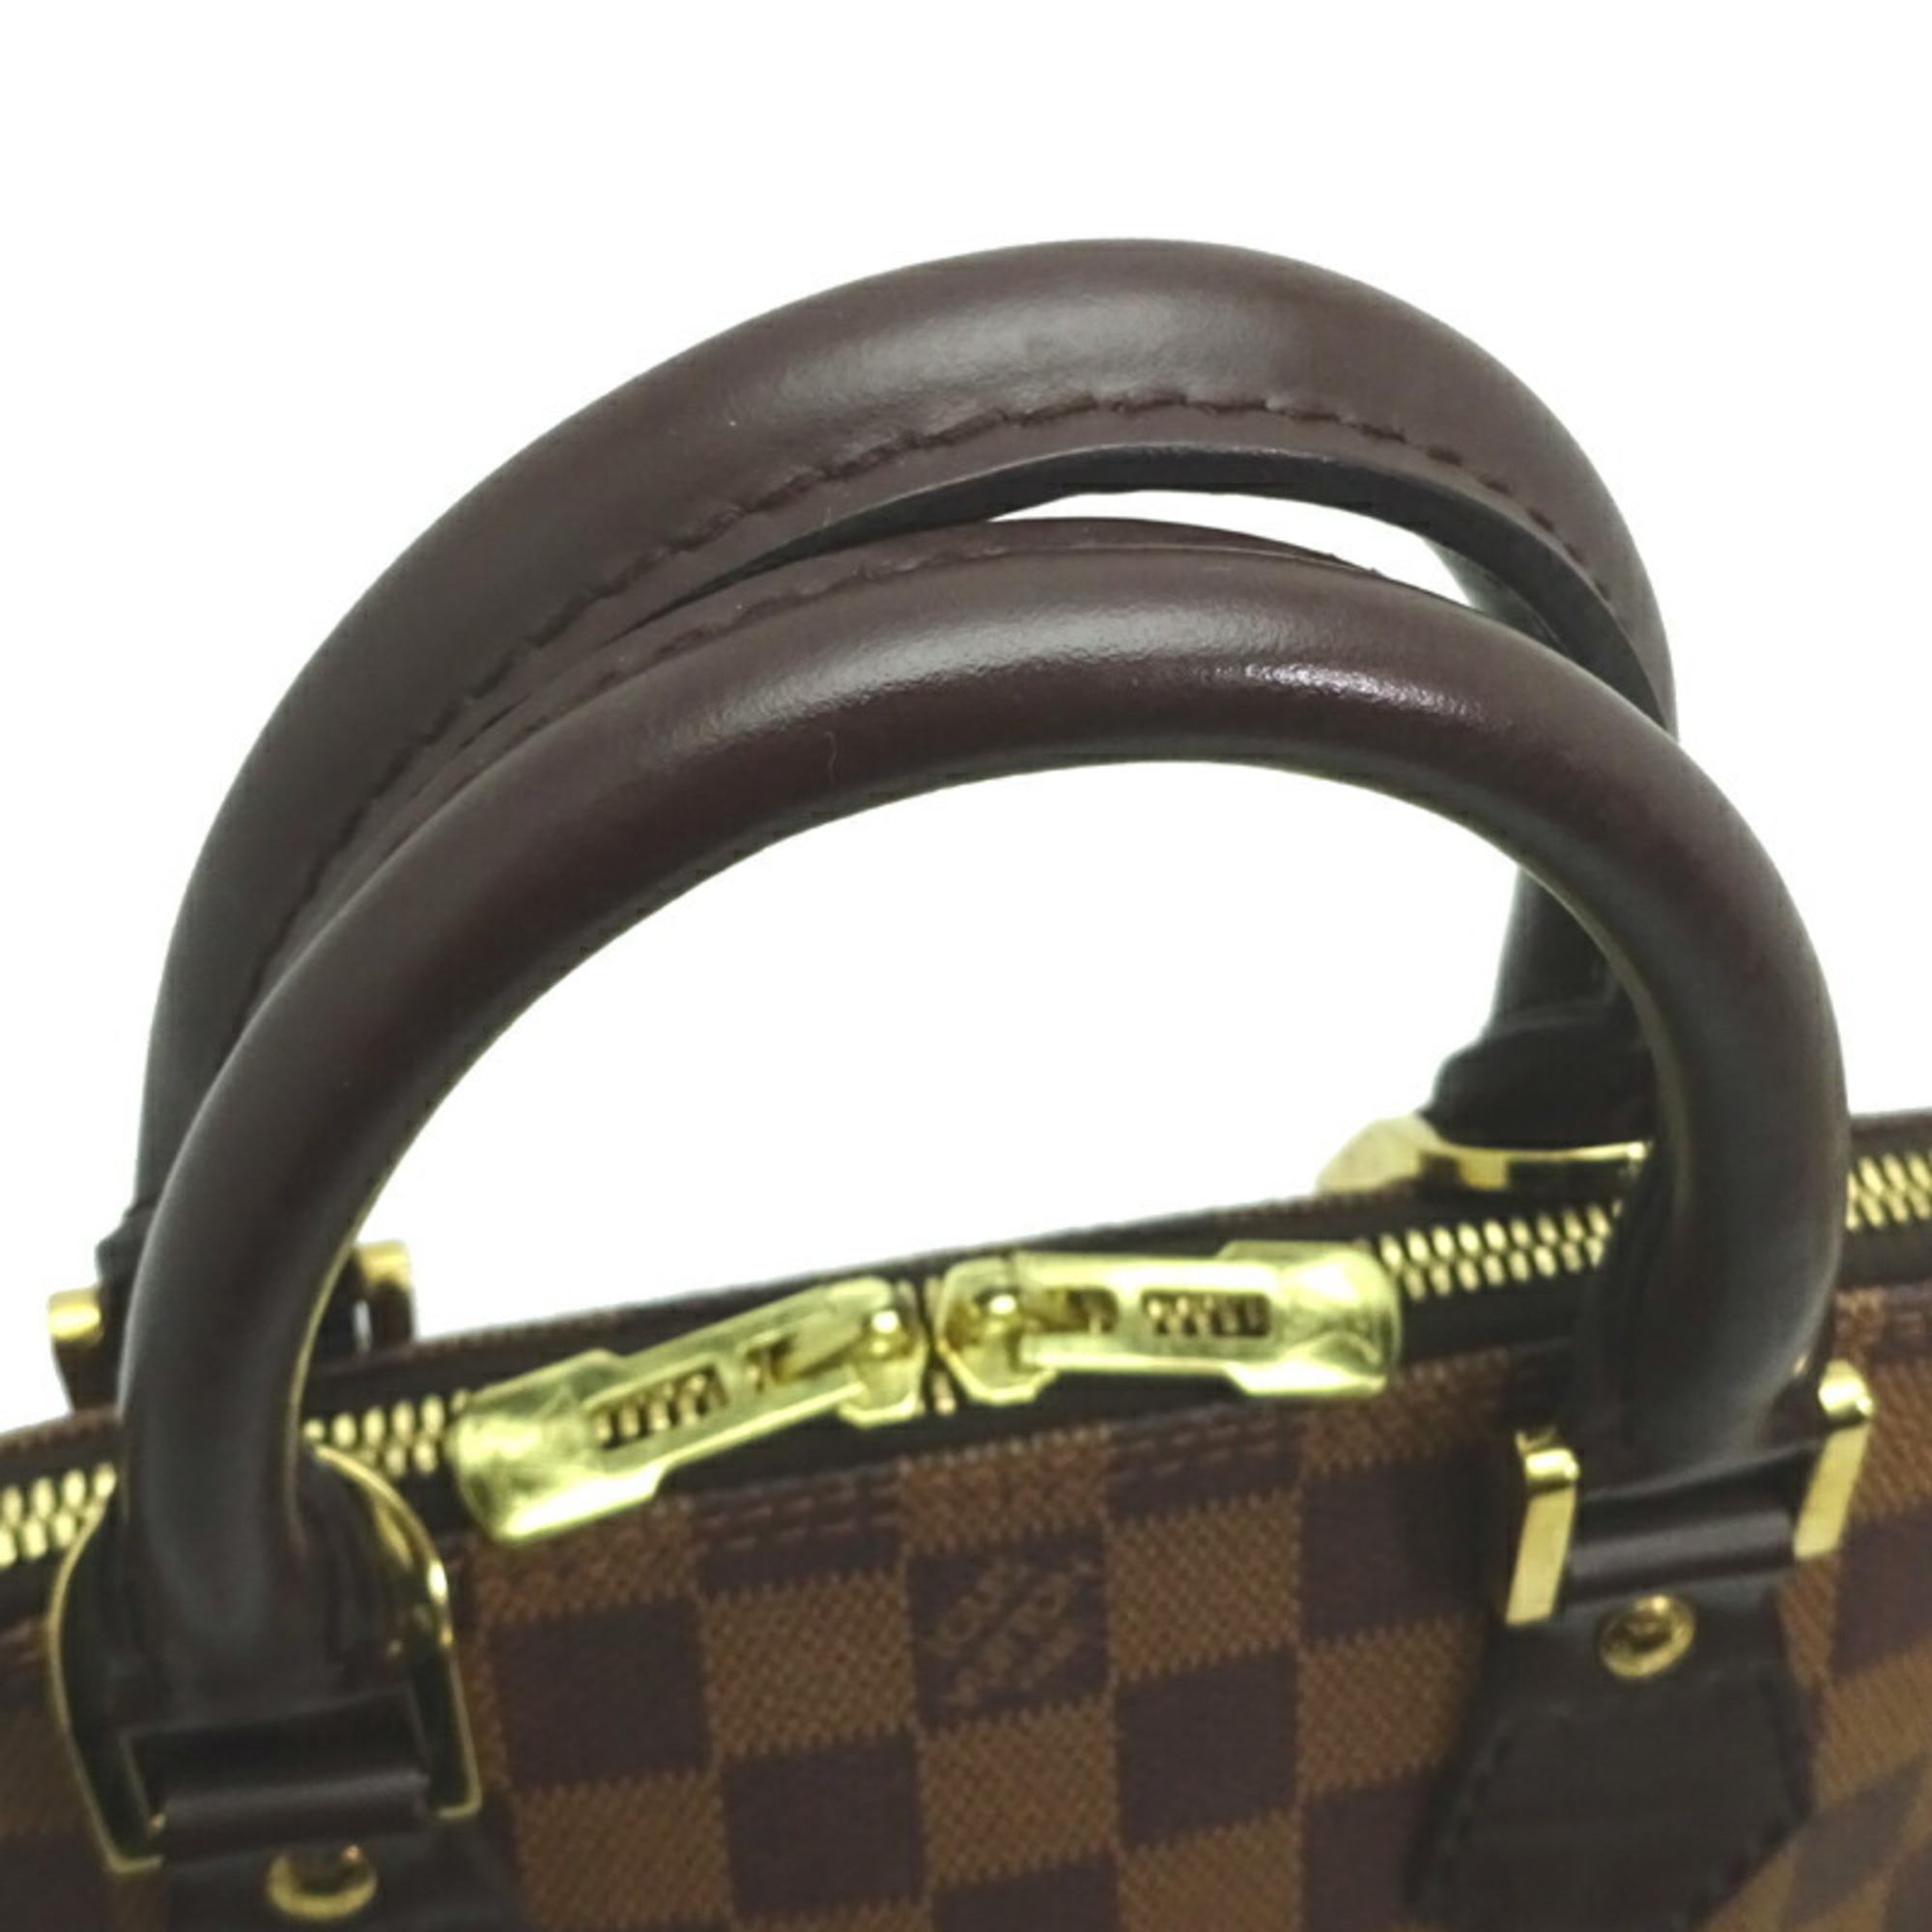 Louis Vuitton Alma PM Women's Handbag N53151 Damier Ebene (Brown)